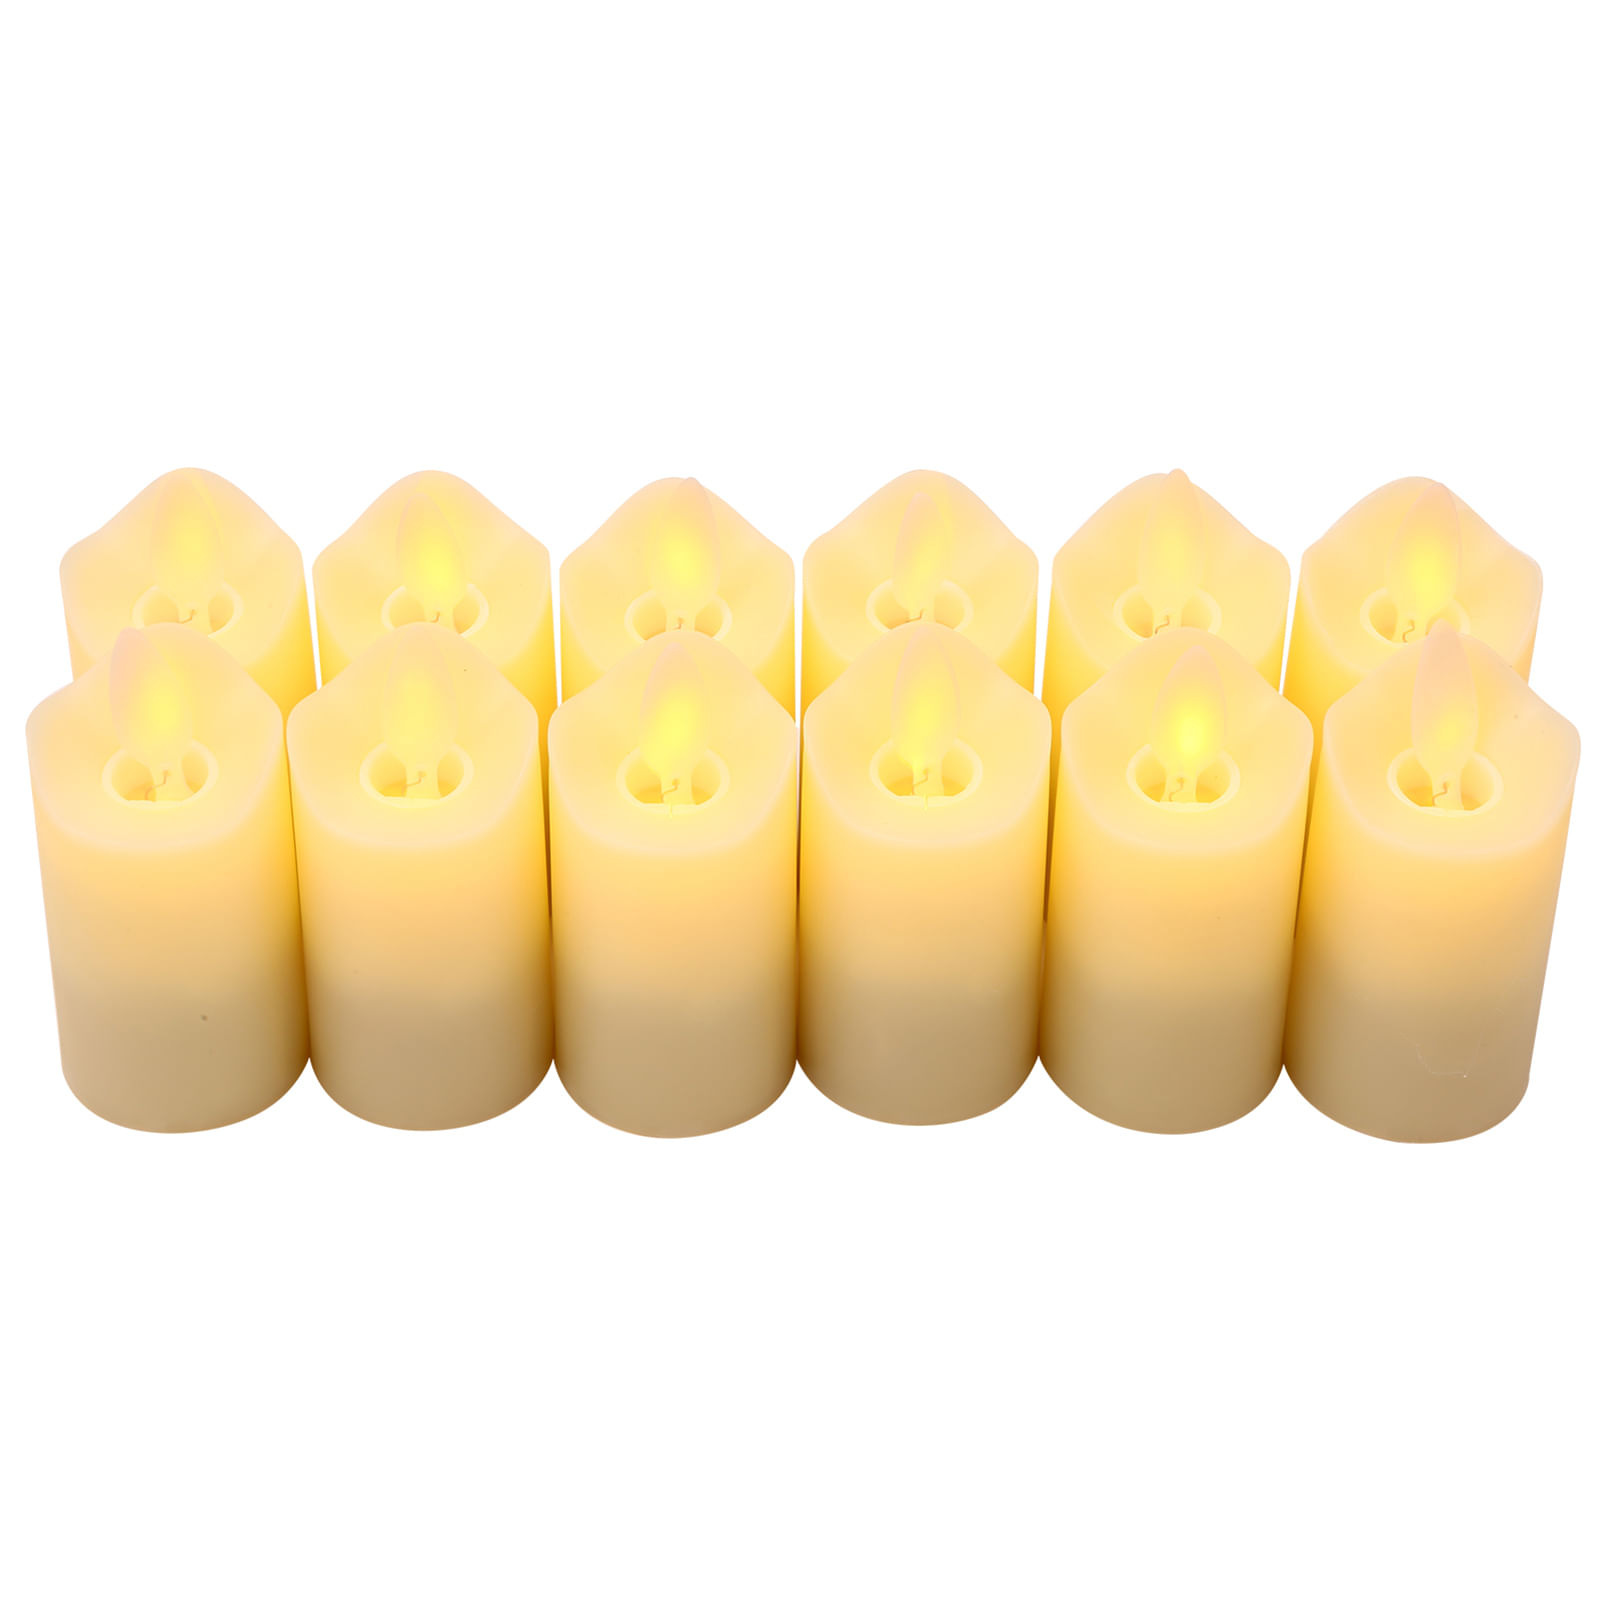 12 velas recargables sin llama, realistas, de color amarillo Tomtop H35338-1 12() USB CL220812Y